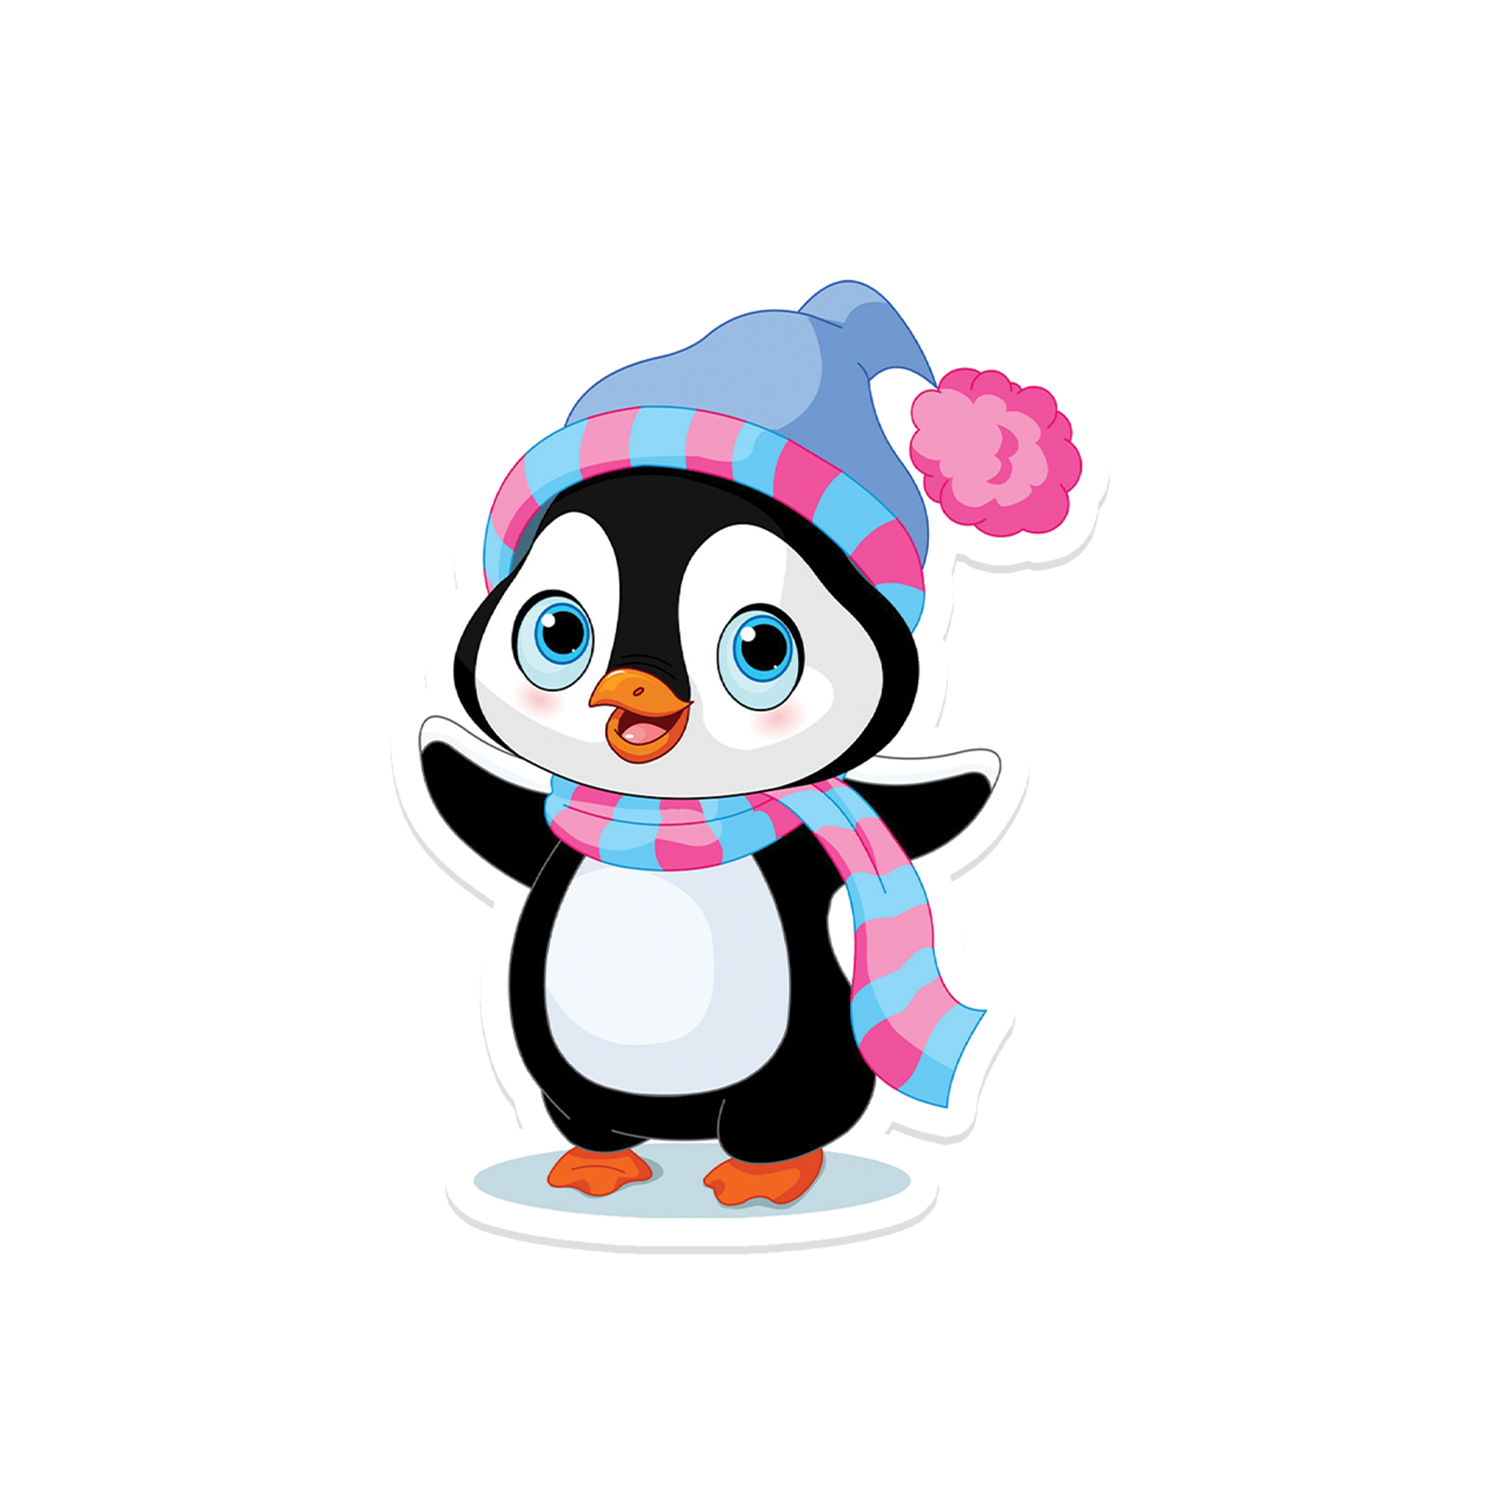 Winter Wonderland: Cute Penguin Wooden Fridge Magnet Fridge Magnet Pack of 1